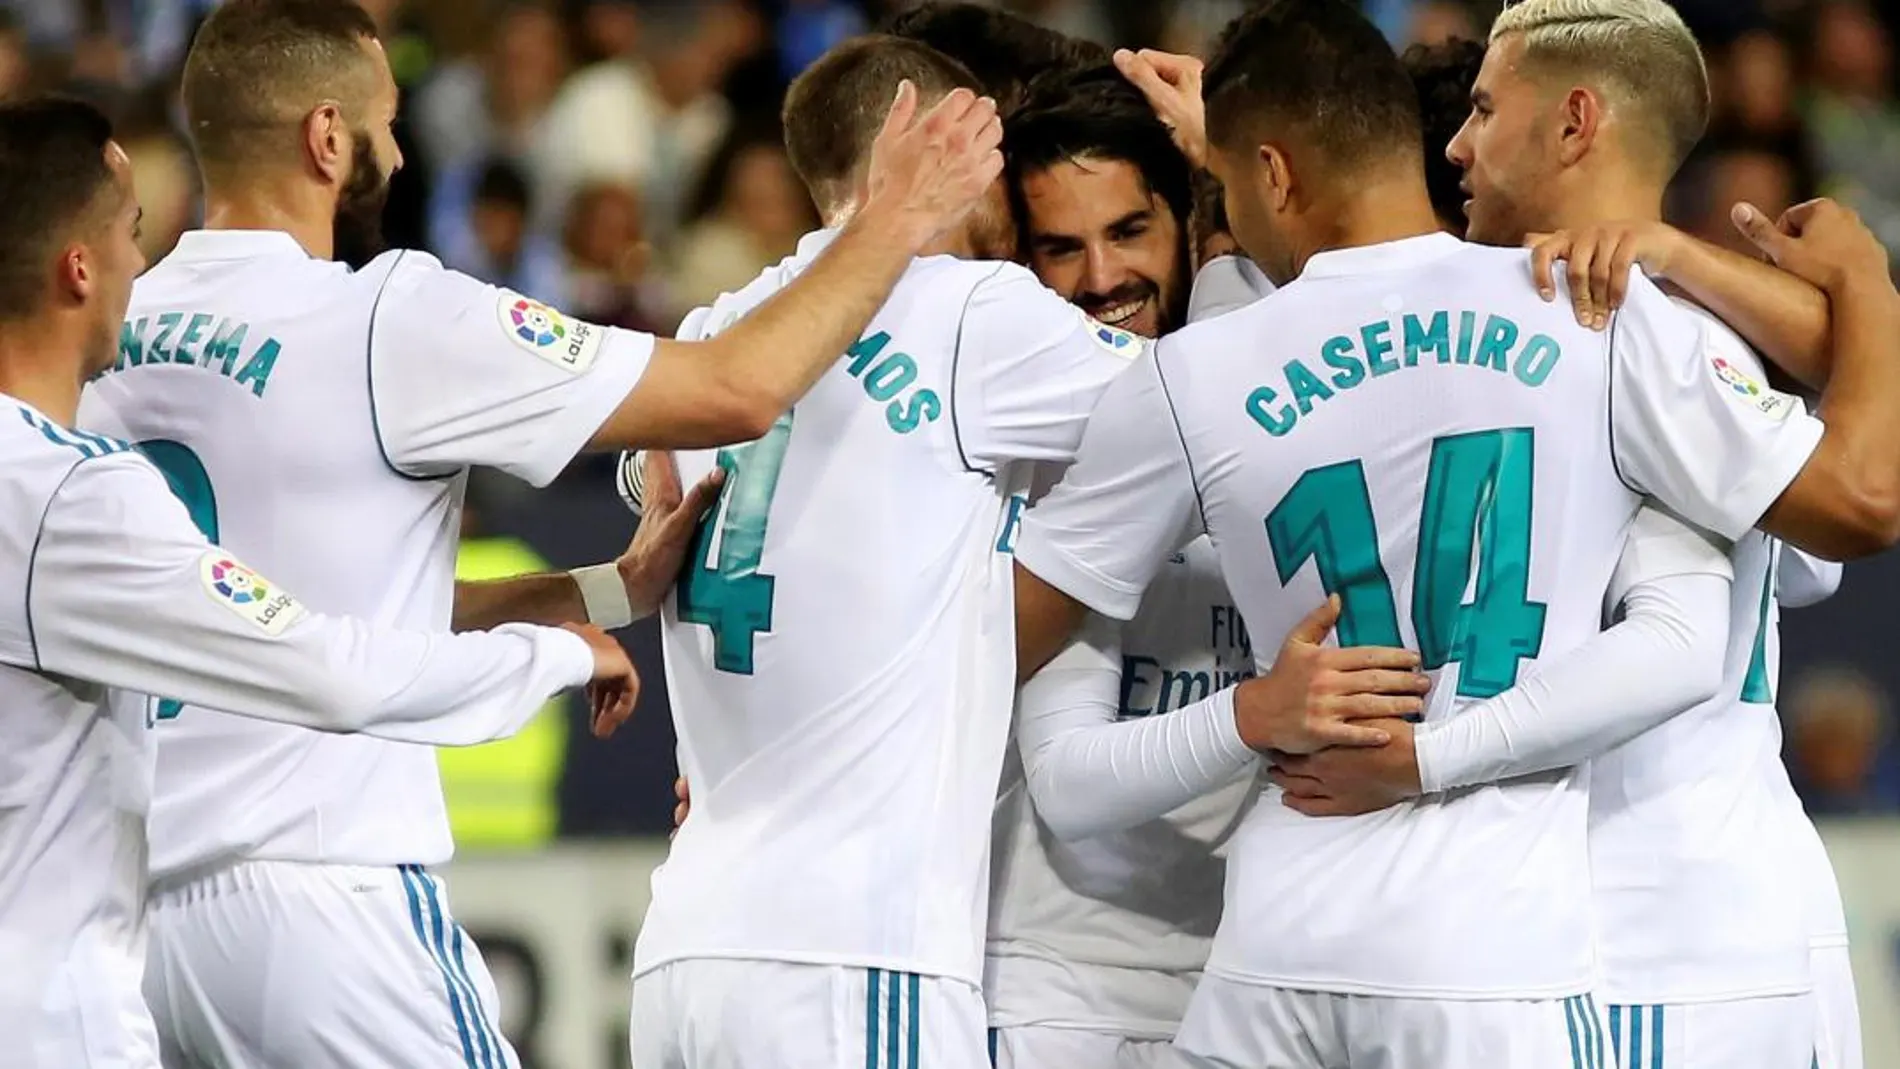 Los jugadores del Real Madrid celebran tras el gol marcado por el centrocampista Francisco Alarcón. EFE/Daniel Pérez